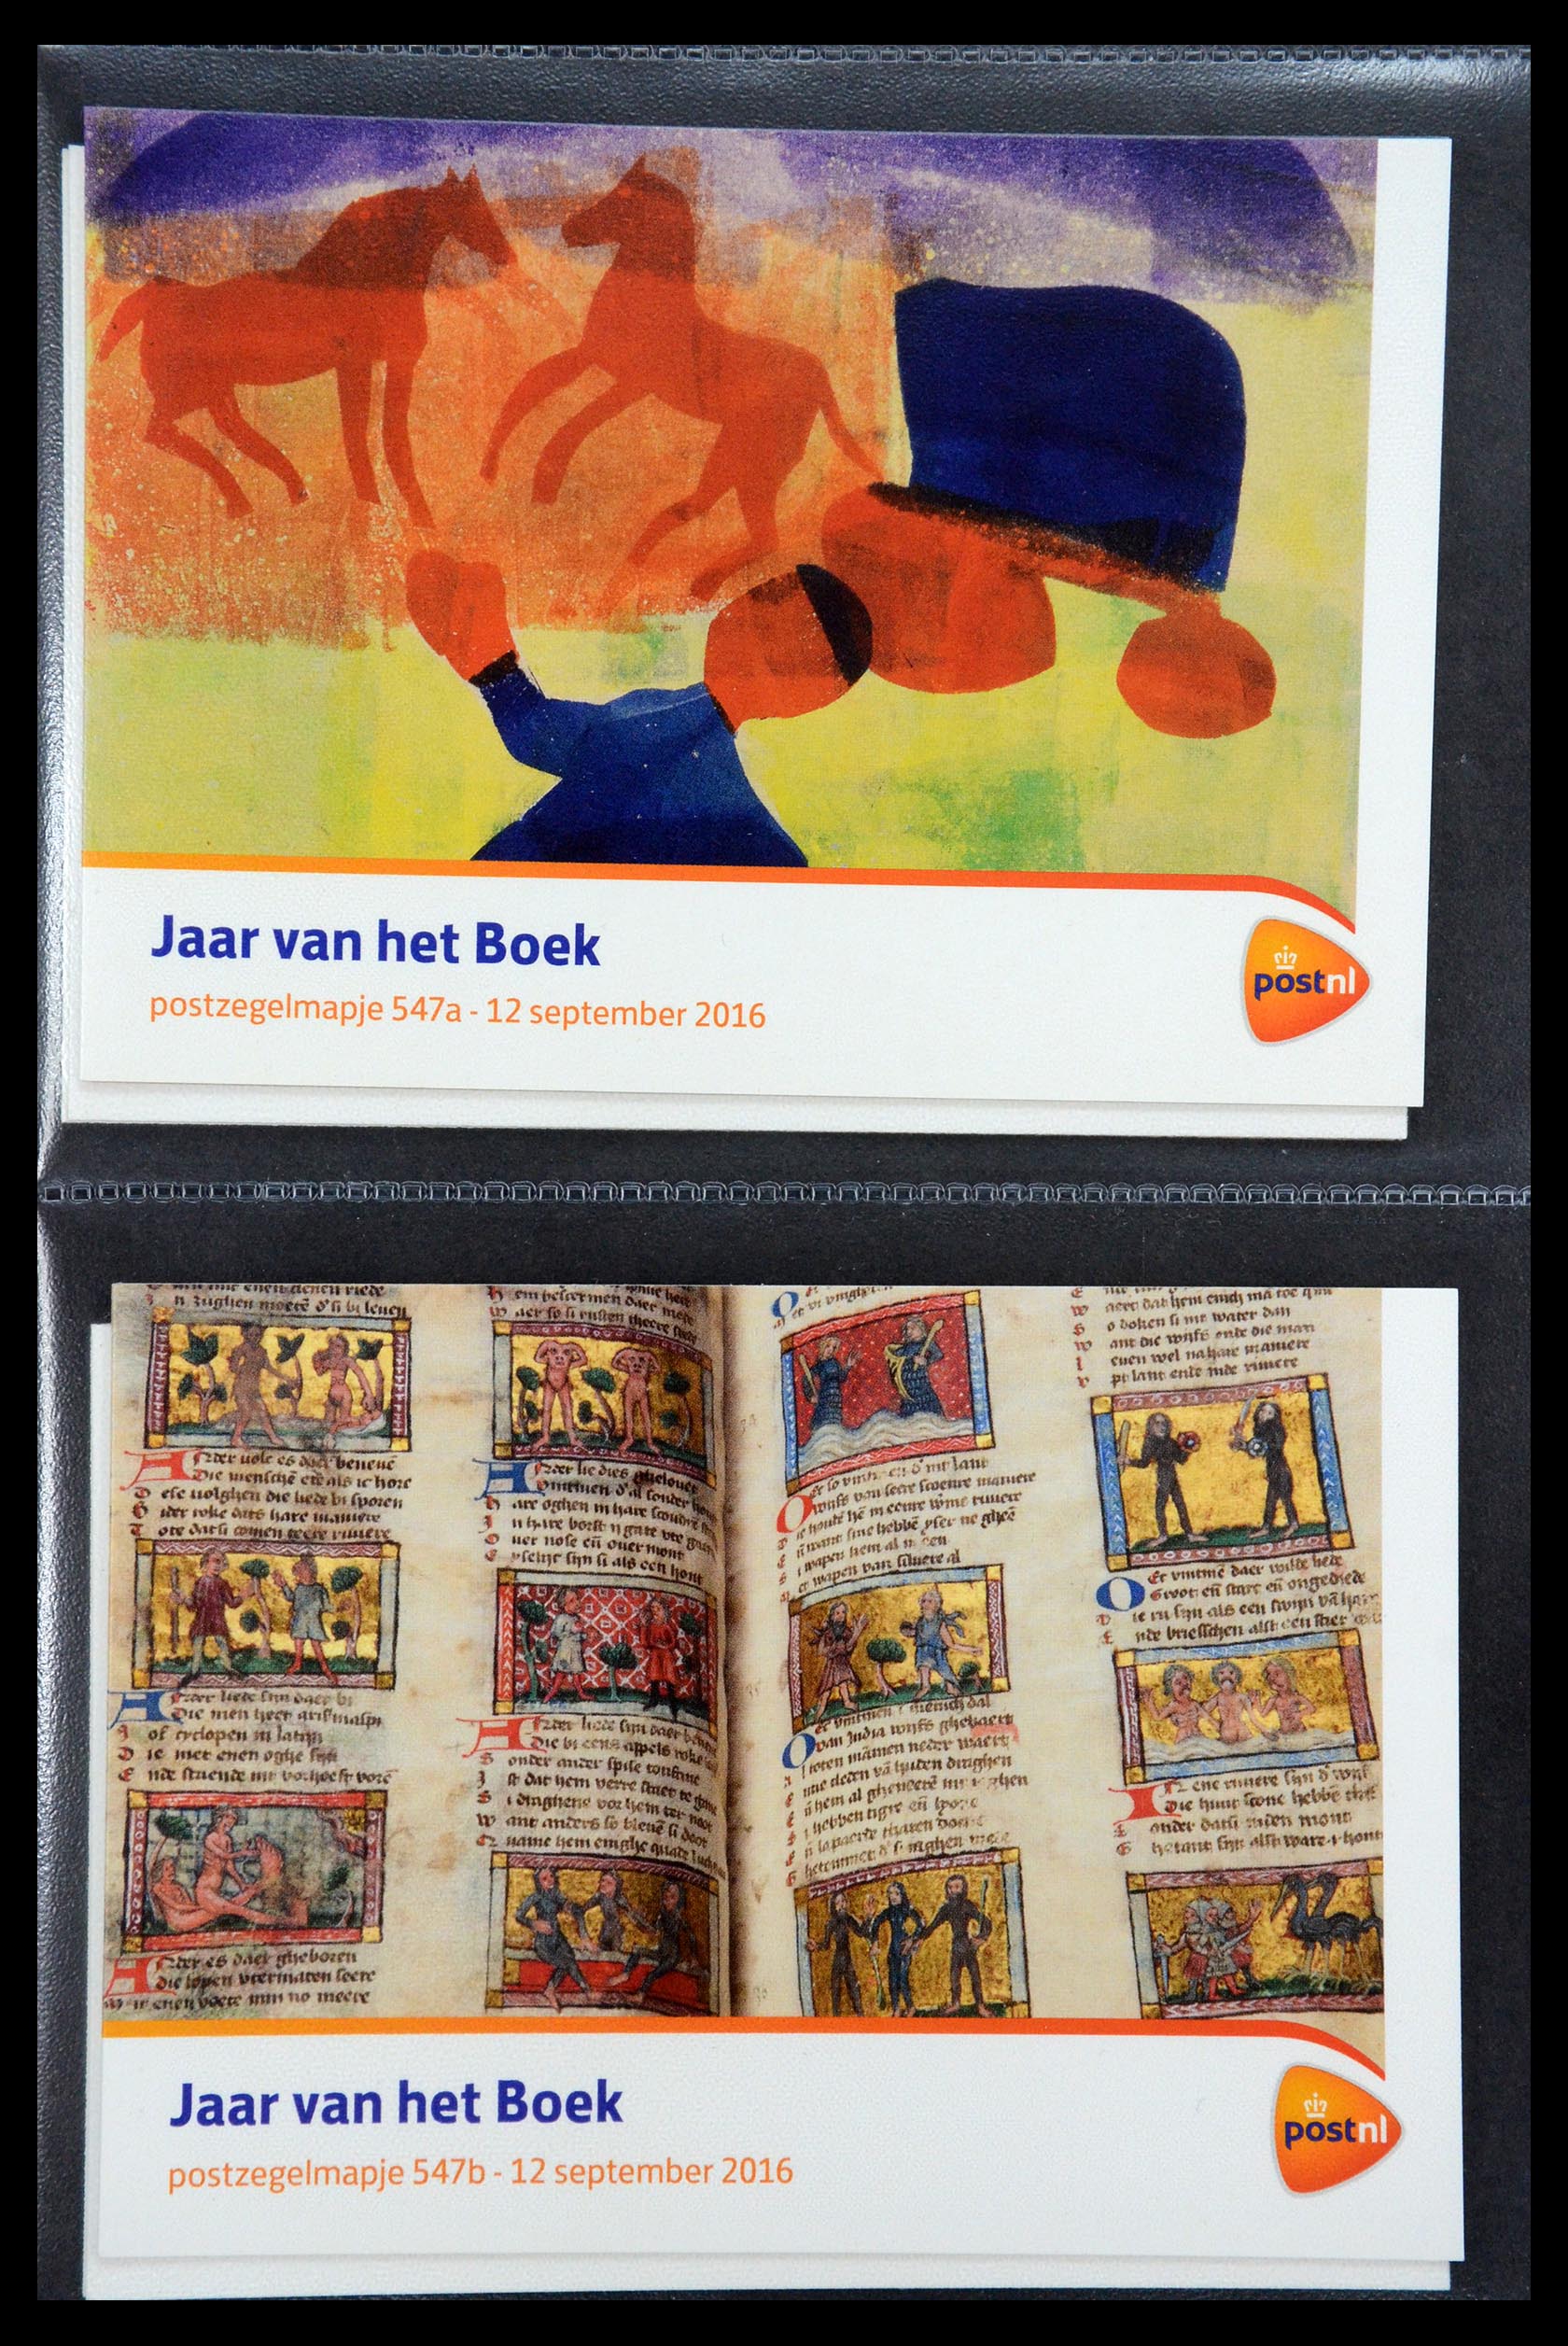 35187 326 - Stamp Collection 35187 Netherlands PTT presentation packs 1982-2019!